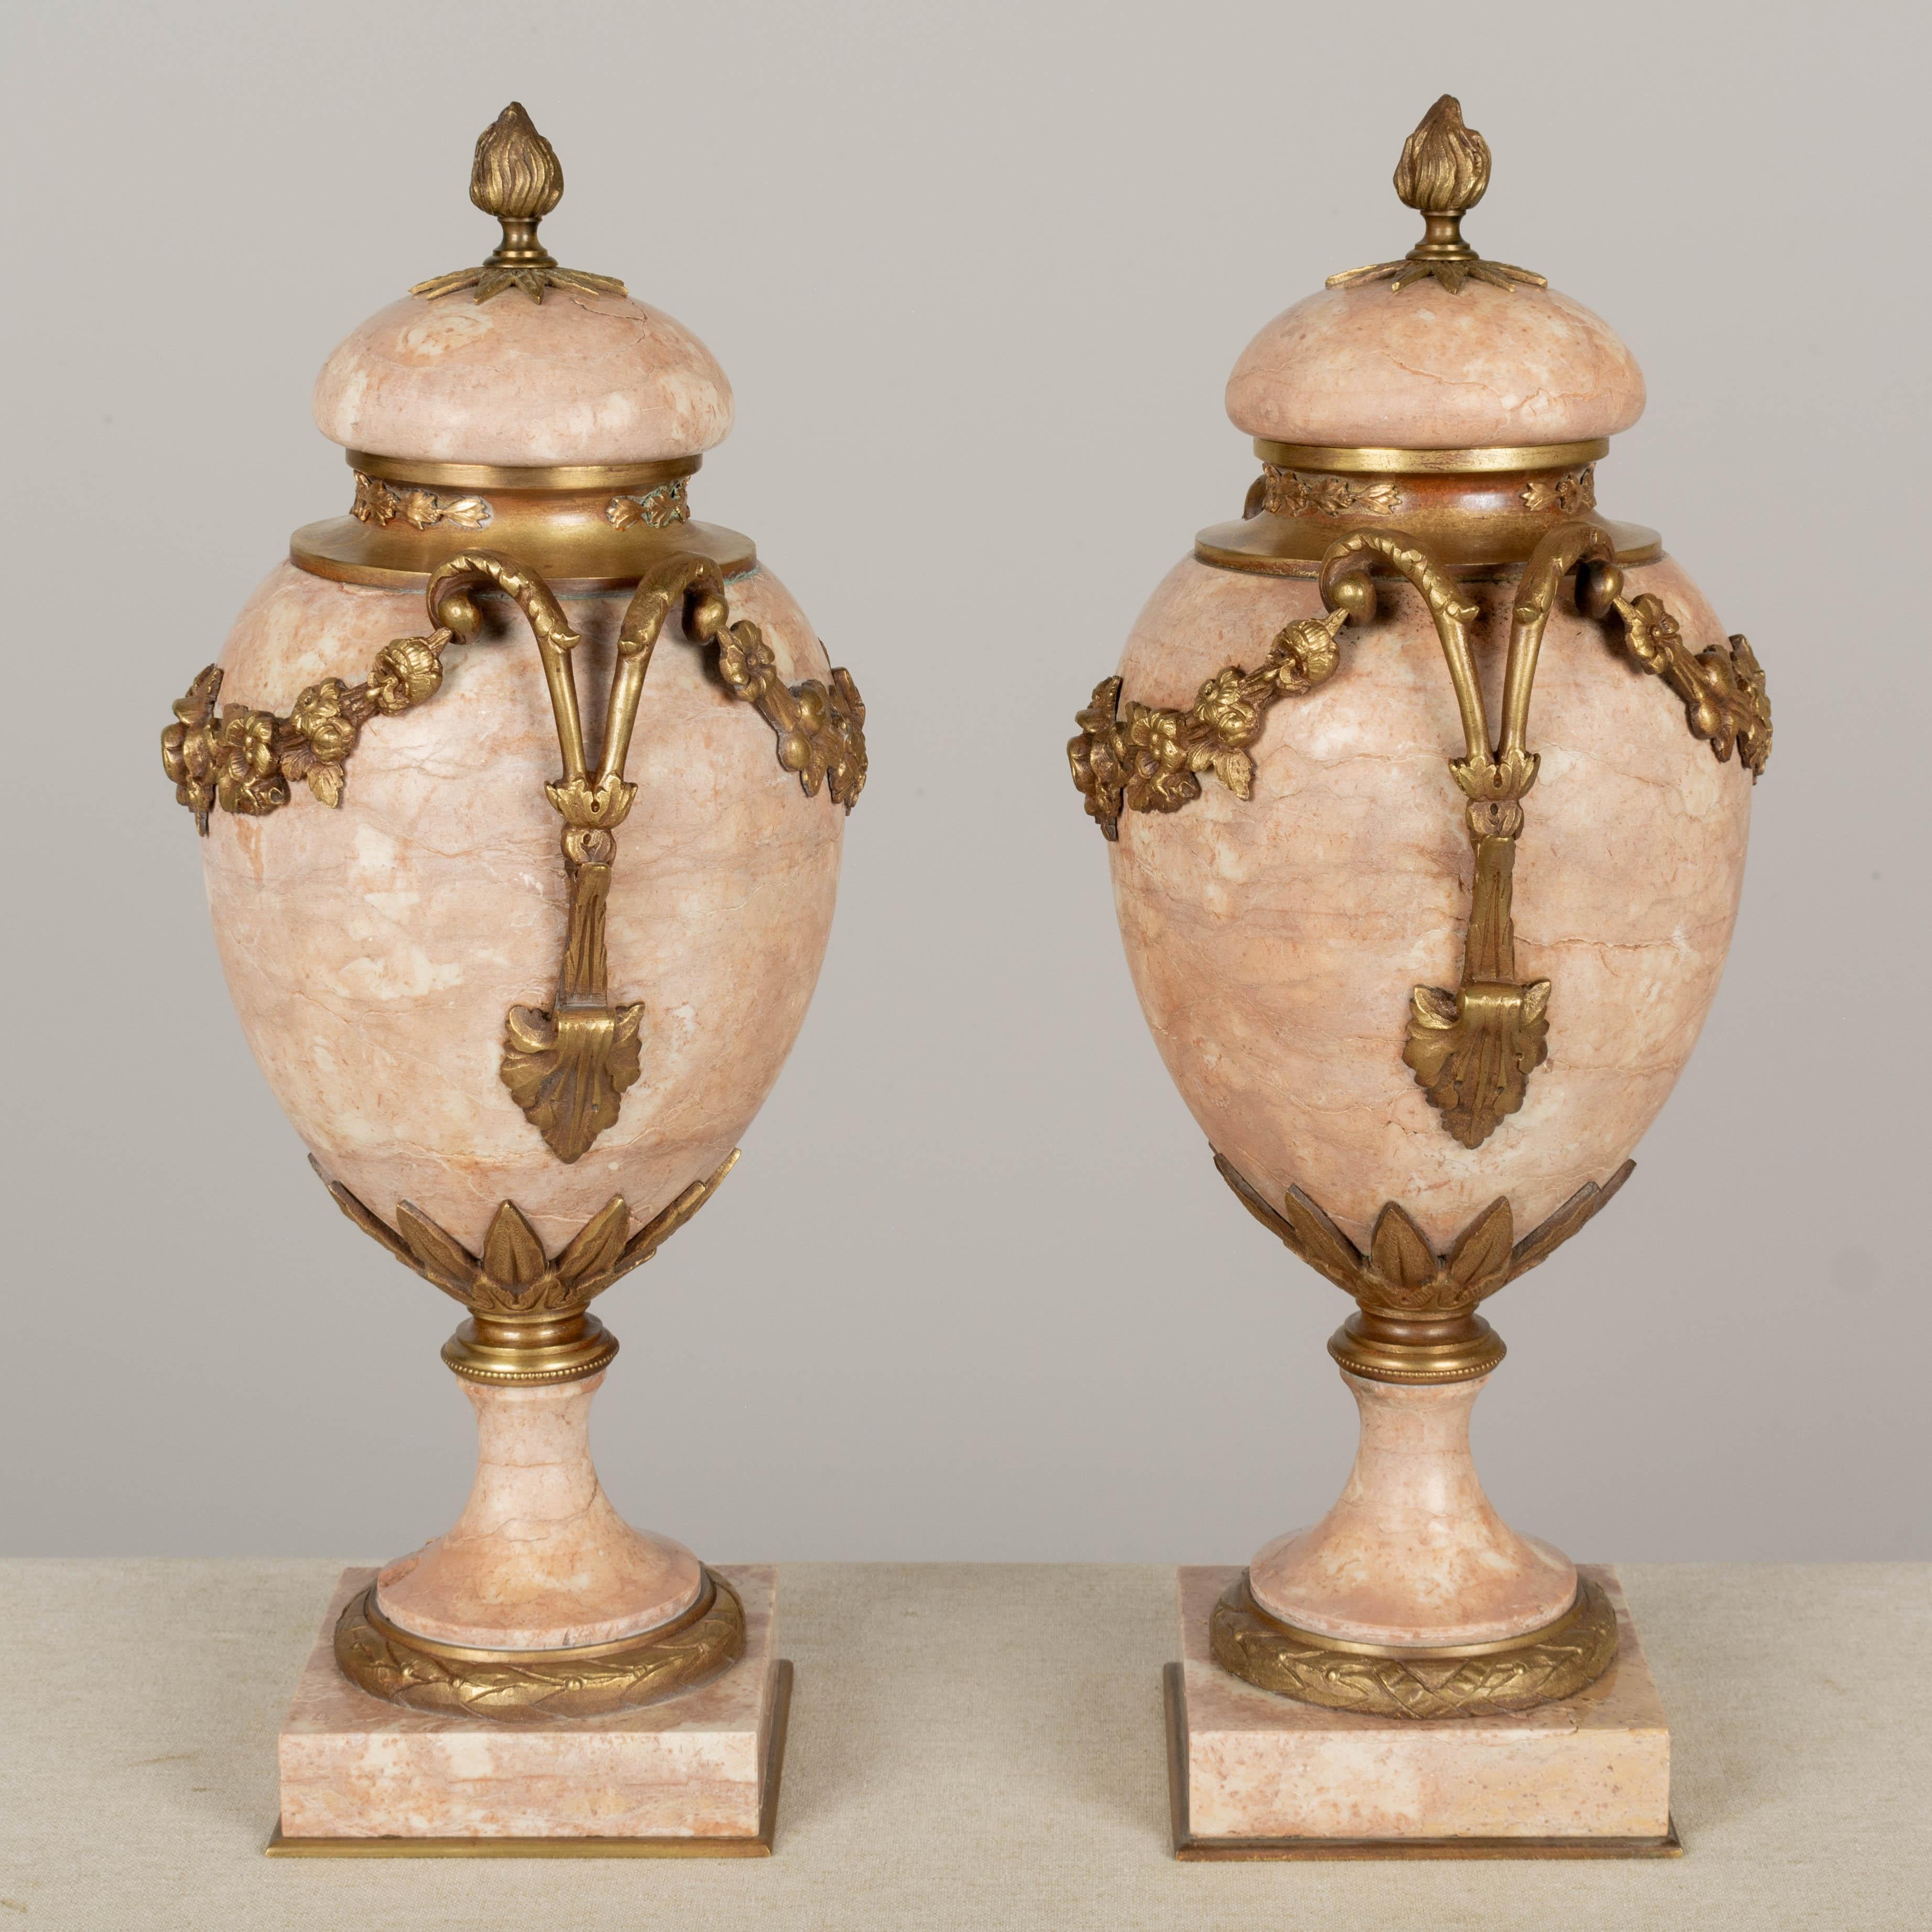 Ein Paar französischer, in Bronze gefasster, urnenförmiger Cassetten aus dem 19. Jahrhundert mit schönem, rosafarbenem Marmor und schön detaillierten, gegossenen Blumengirlanden. Abnehmbare Deckel mit Flammenköpfen. Kleiner Chip an der Basis eines